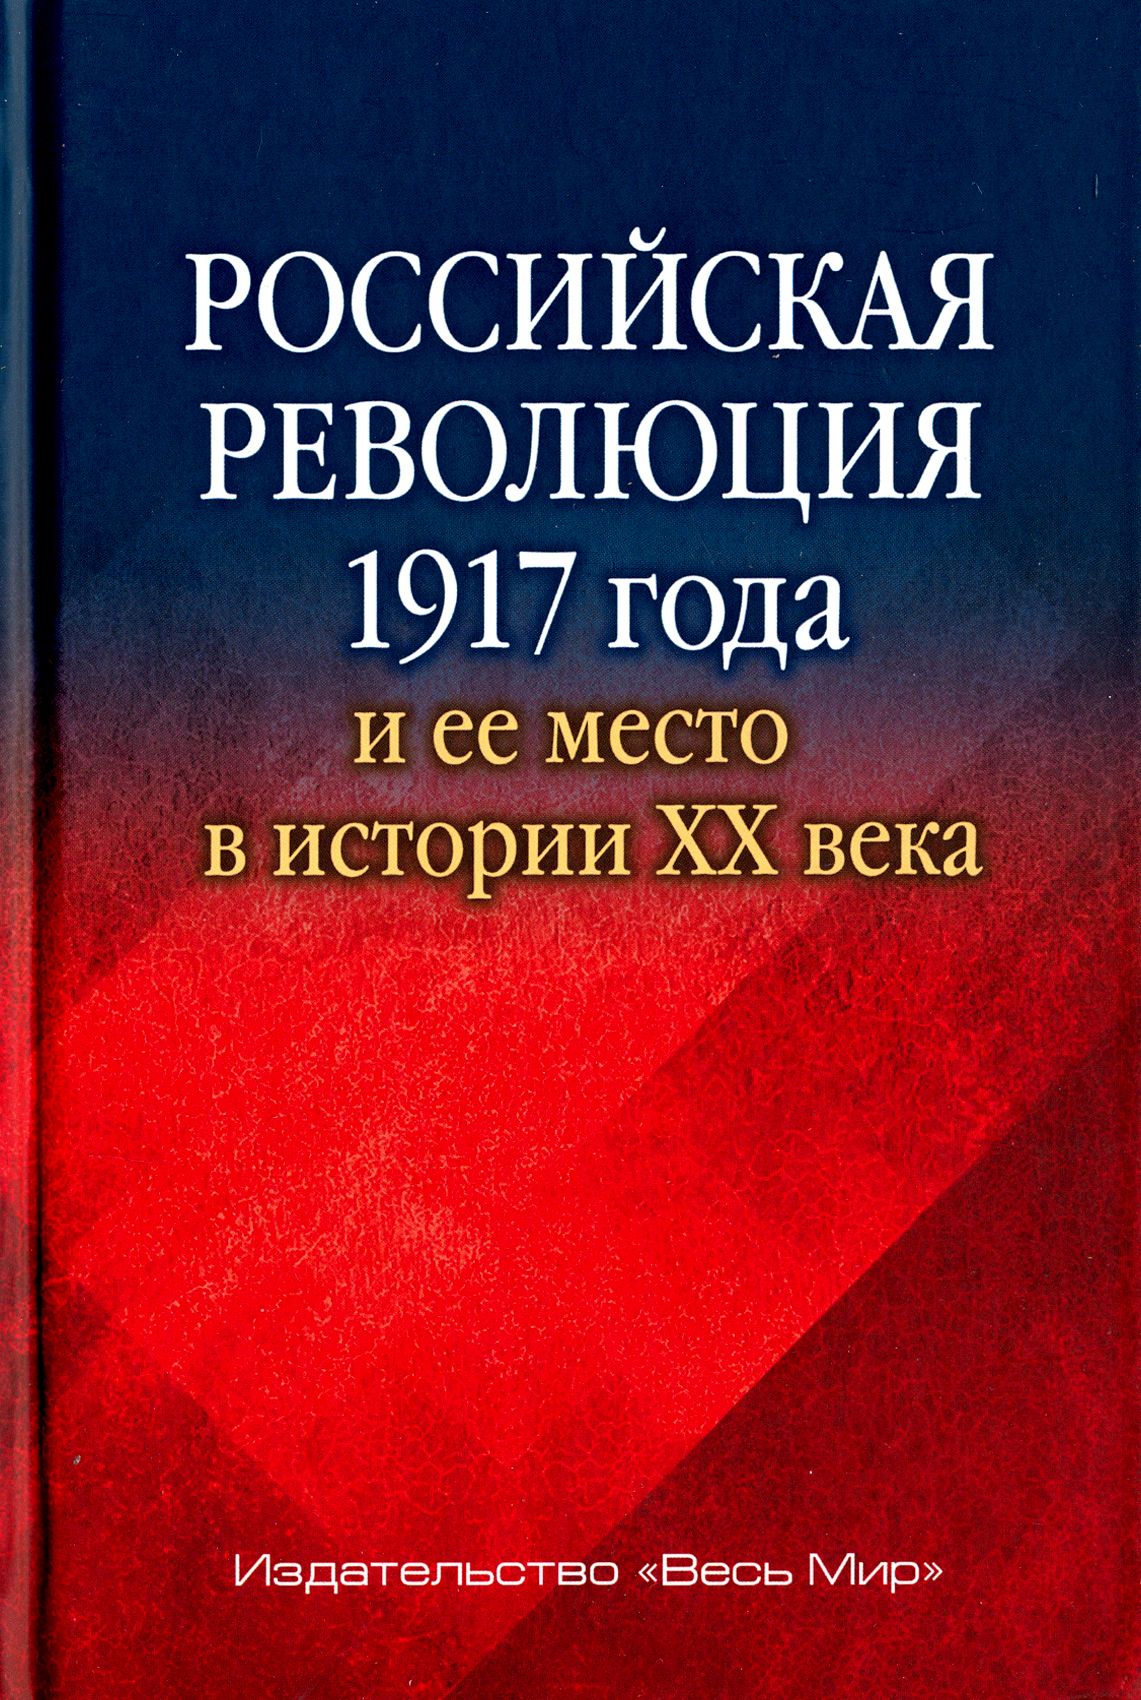 Революция в россии книга. Все российские революции.